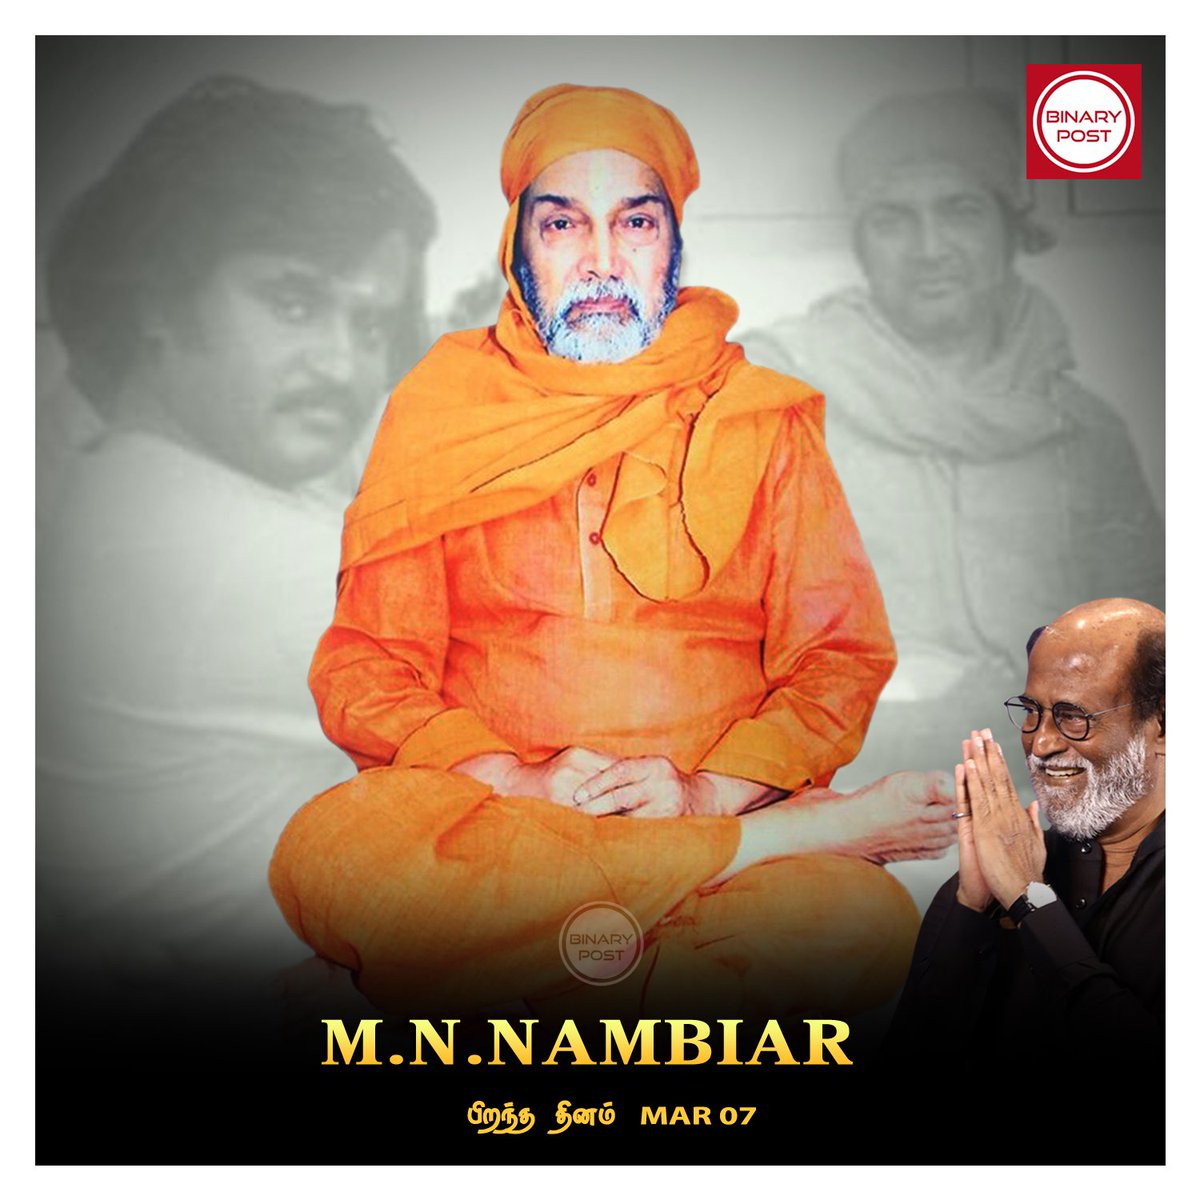 Mar 07, M.N.Nambiar பிறந்த தினம்... 

#MNNambiar #Nambiar #Thalaivar 🤘 #Superstar #MakkalThalaivar #Rajinikanth #BinaryPost